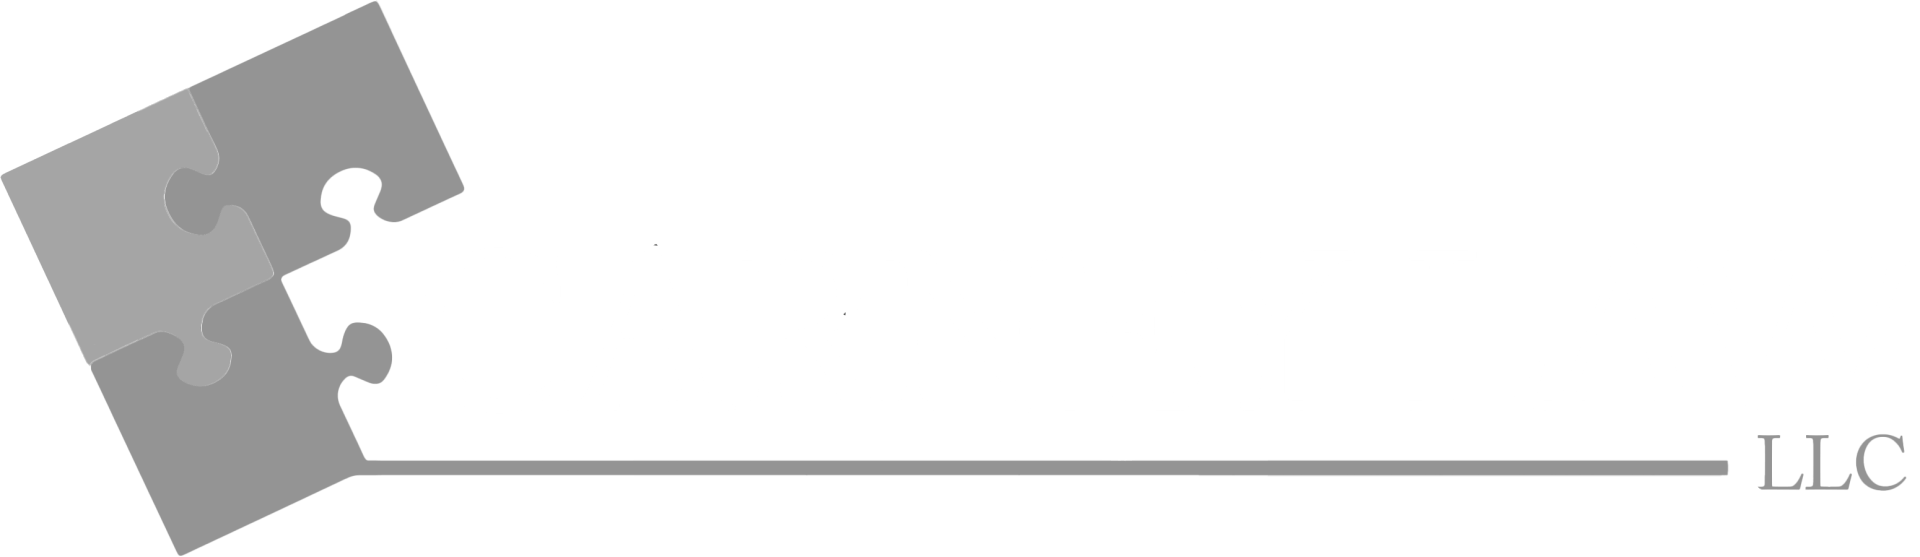 Carney Law, LLC logo